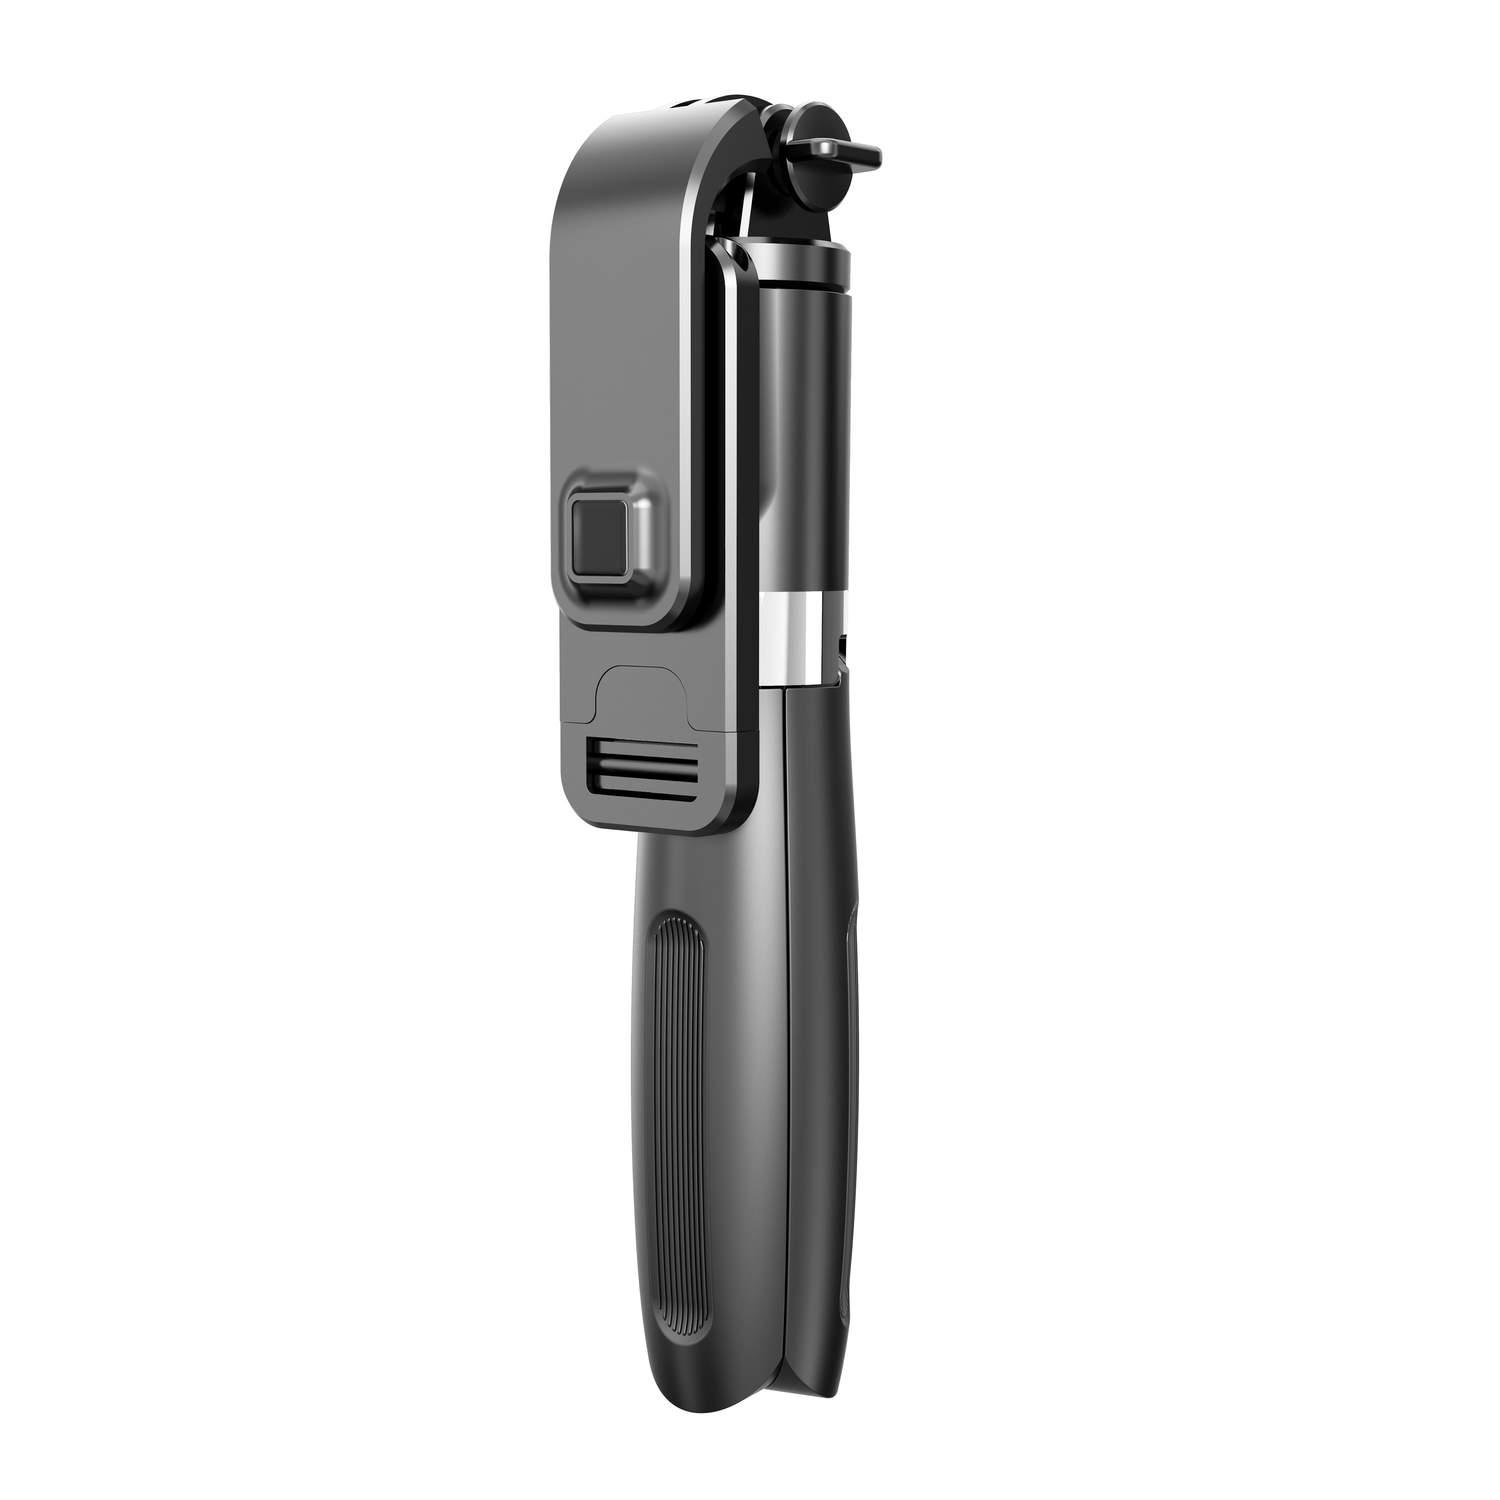 Kamera- mit INF Gopro-kompatibe schwarz Selfie-Stick, Fernbedienung und Selfie-Stick/Handystativ